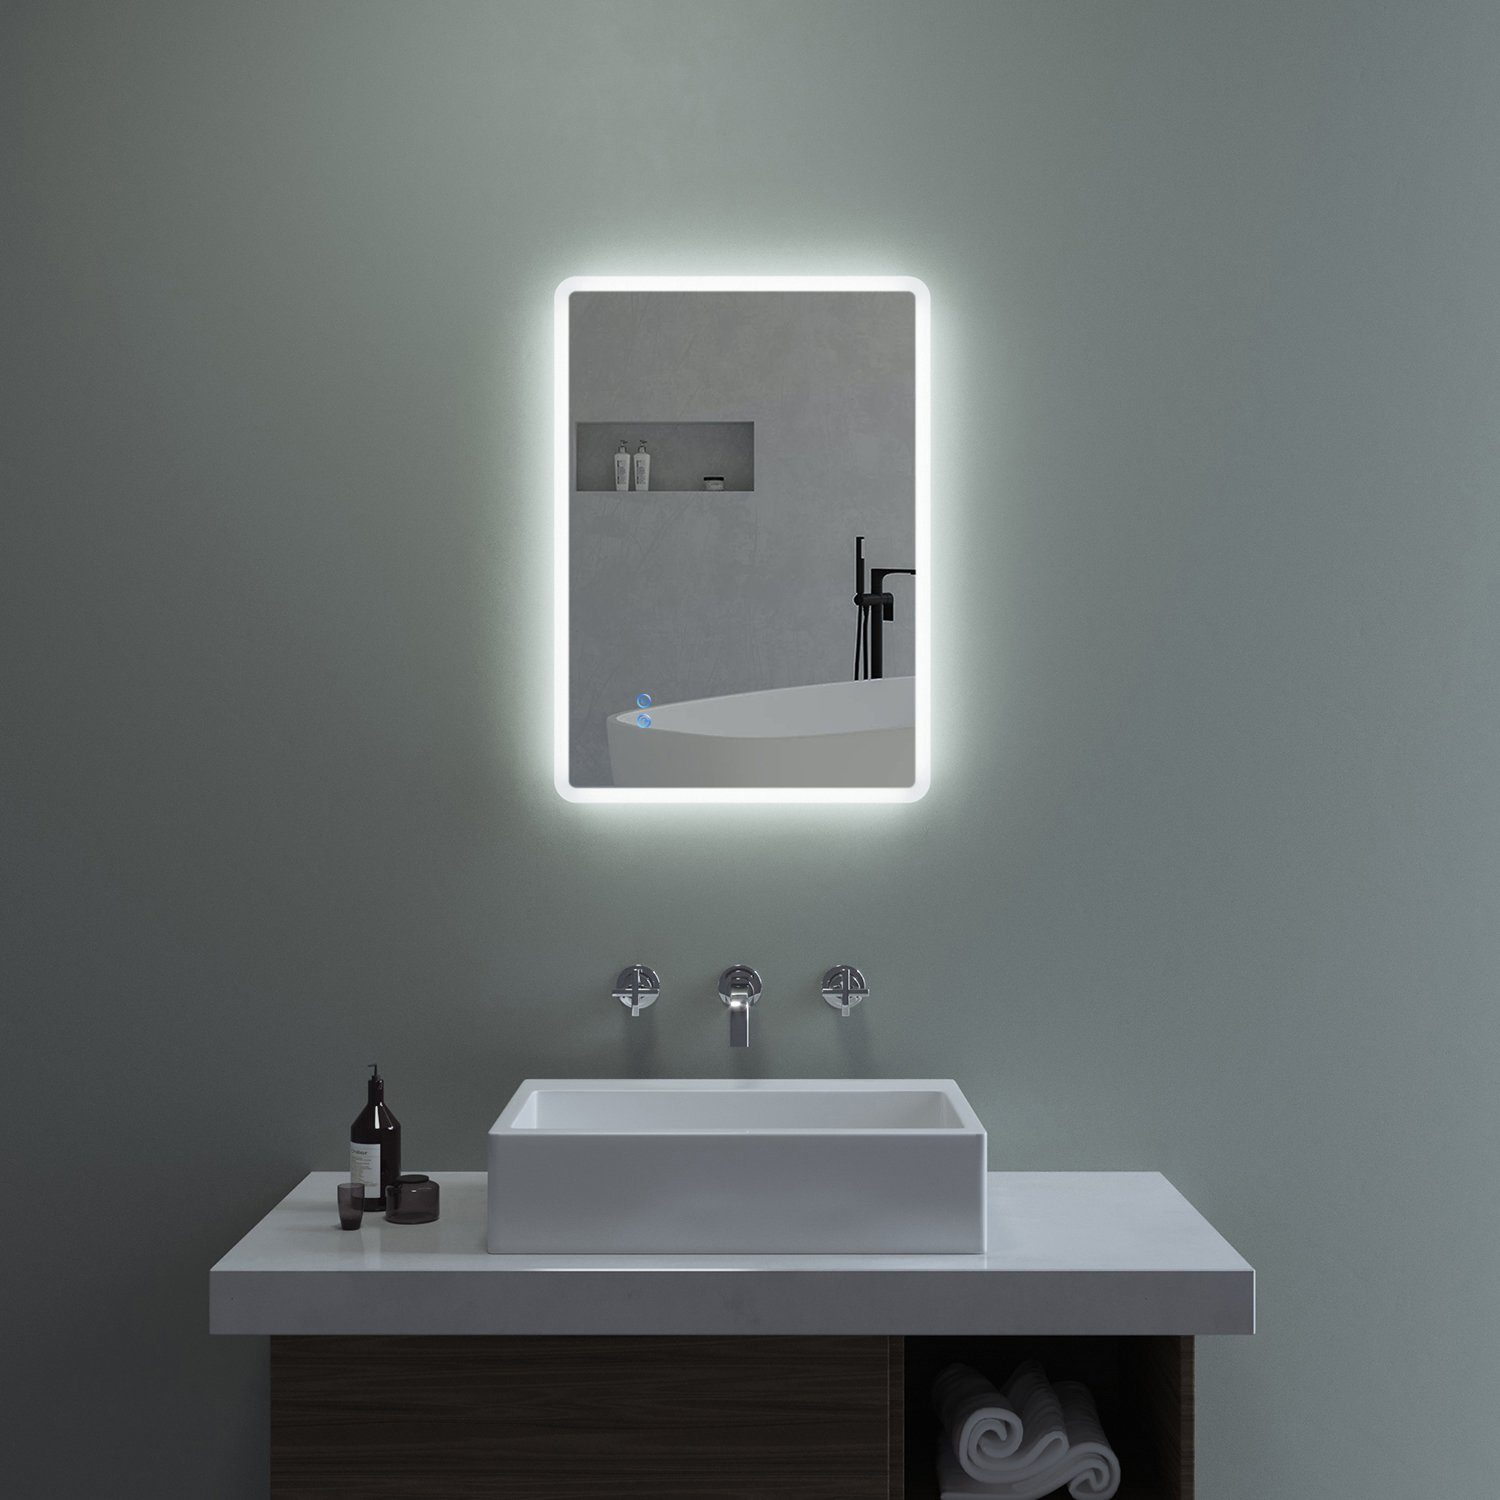 AQUABATOS Badspiegel Badspiegel mit Beleuchtung LED Wandspiegel Lichtspiegel (Badezimmerspiegel beleuchtet), Dimmbar, Kaltweiß 6400K, Touch Schalter, Spiegelheizung